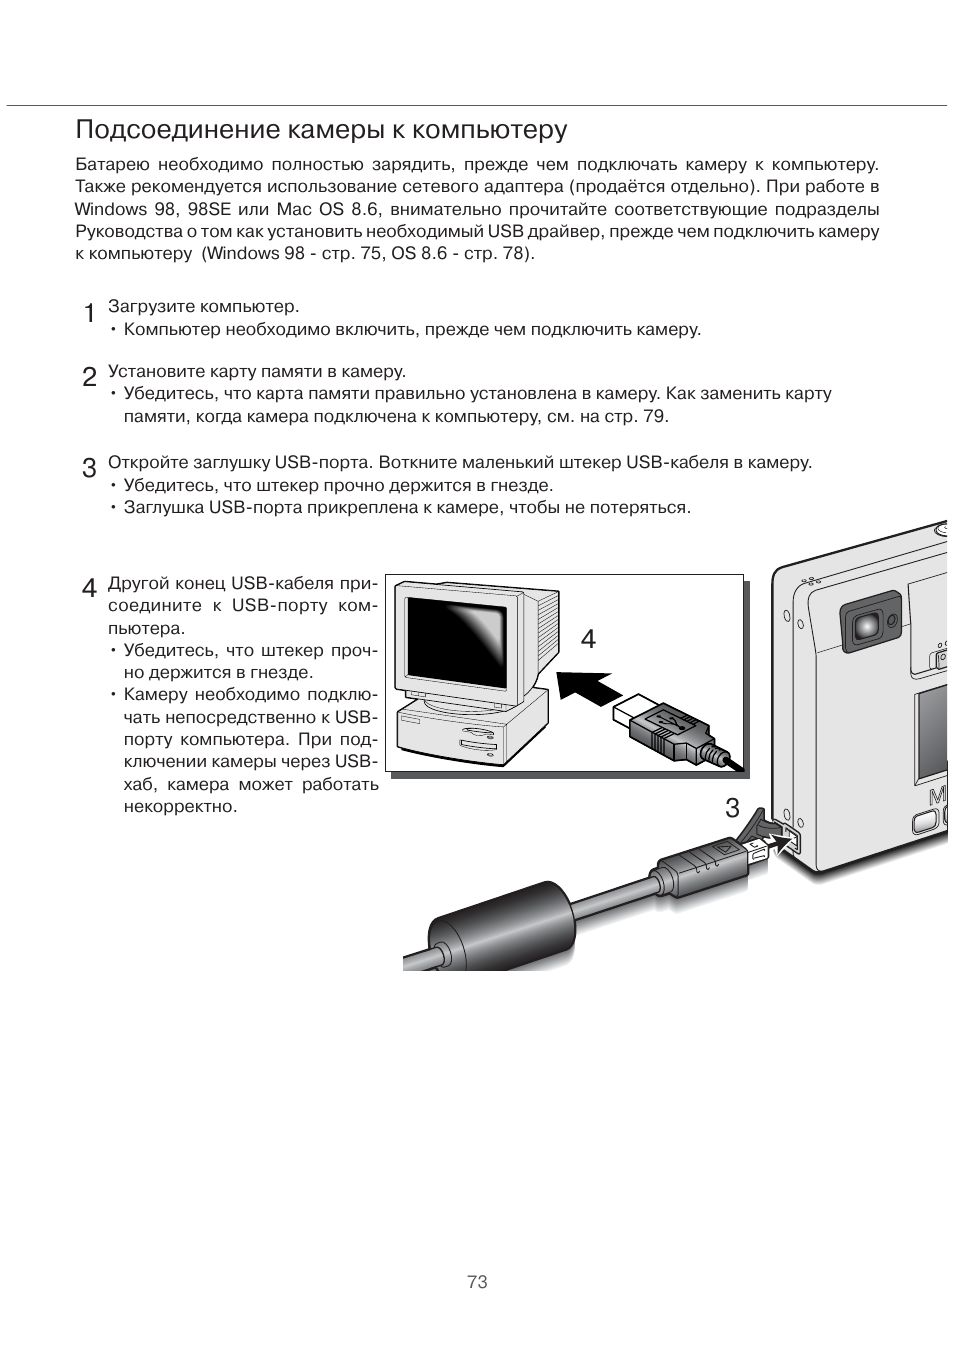 Схема подключения телефонной камеры к ПК